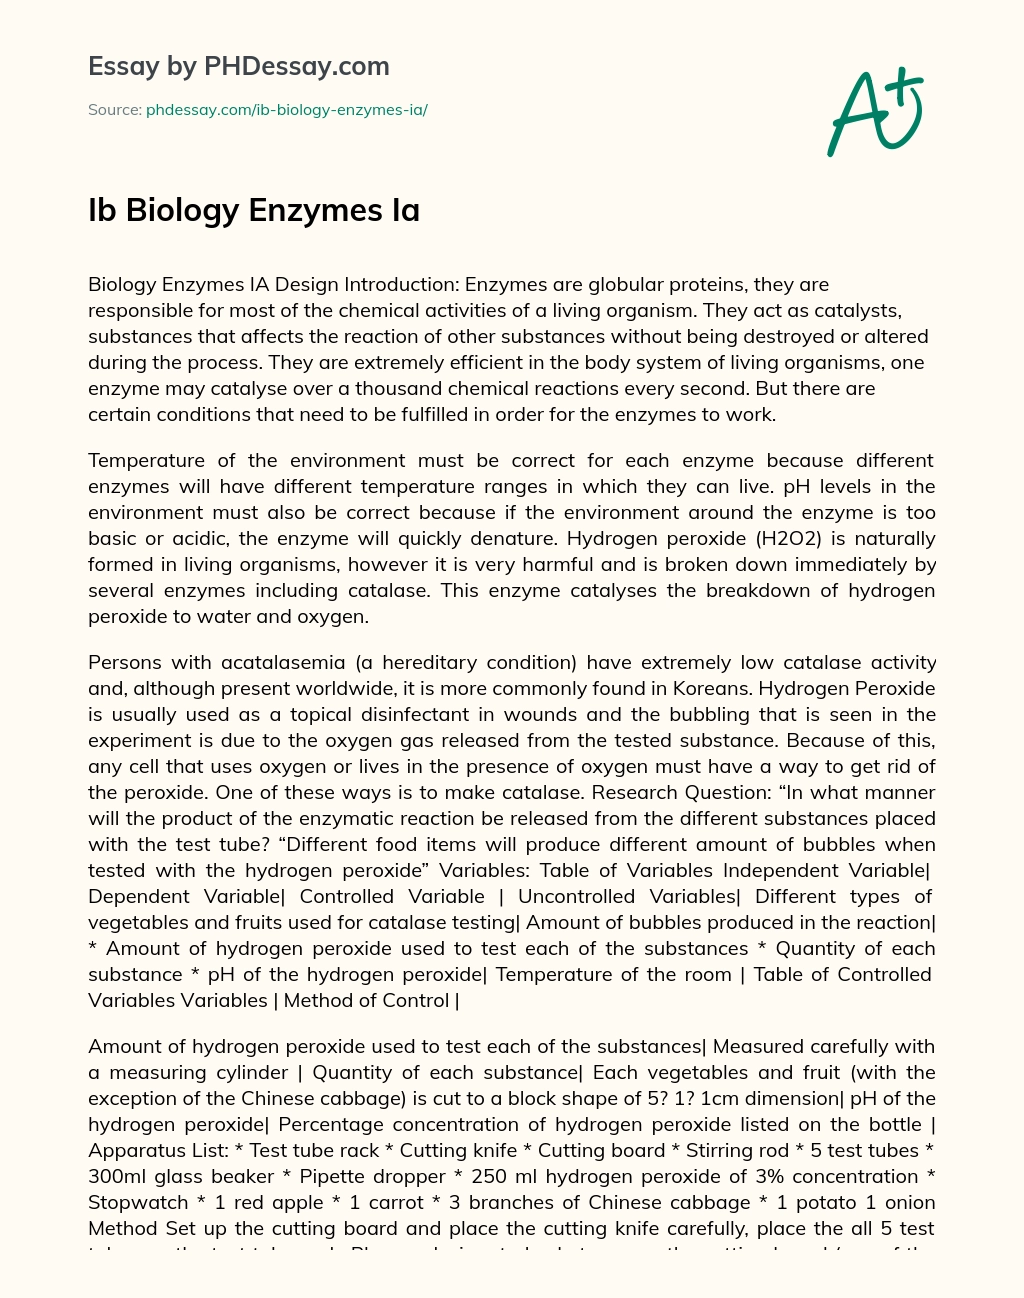 Ib Biology Enzymes Ia essay